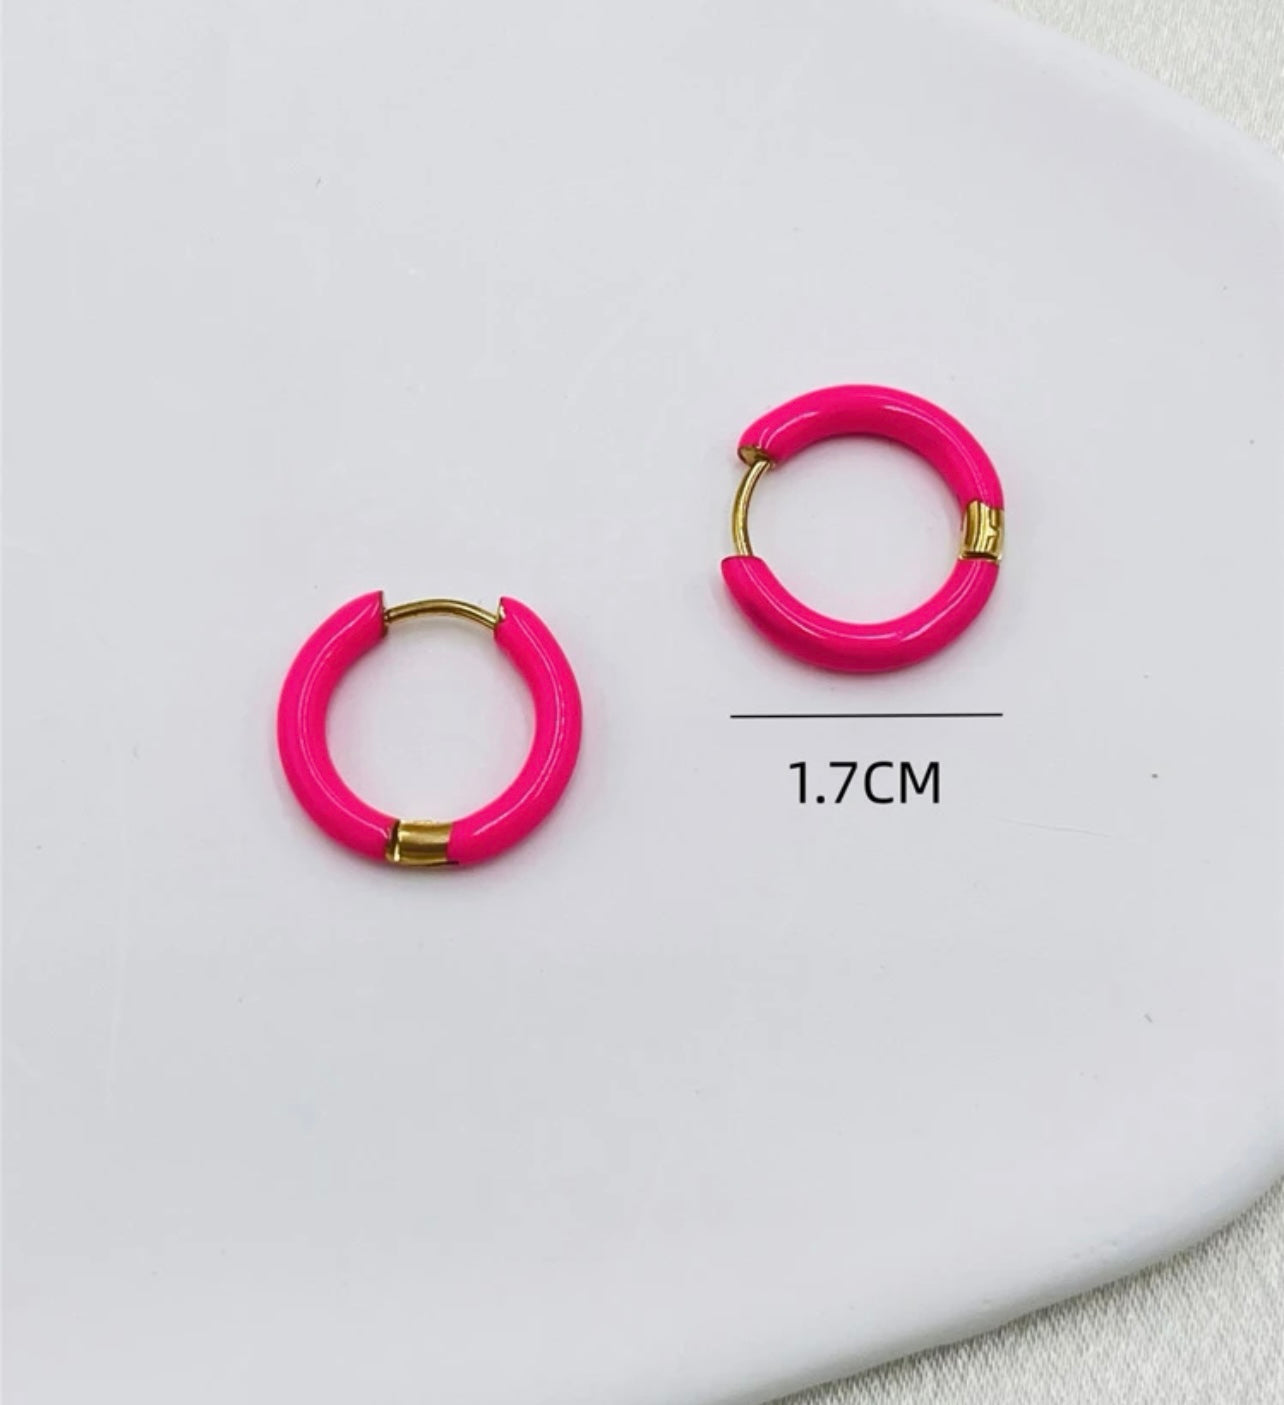 Beautiful Pink Fushica Huggie Earrings